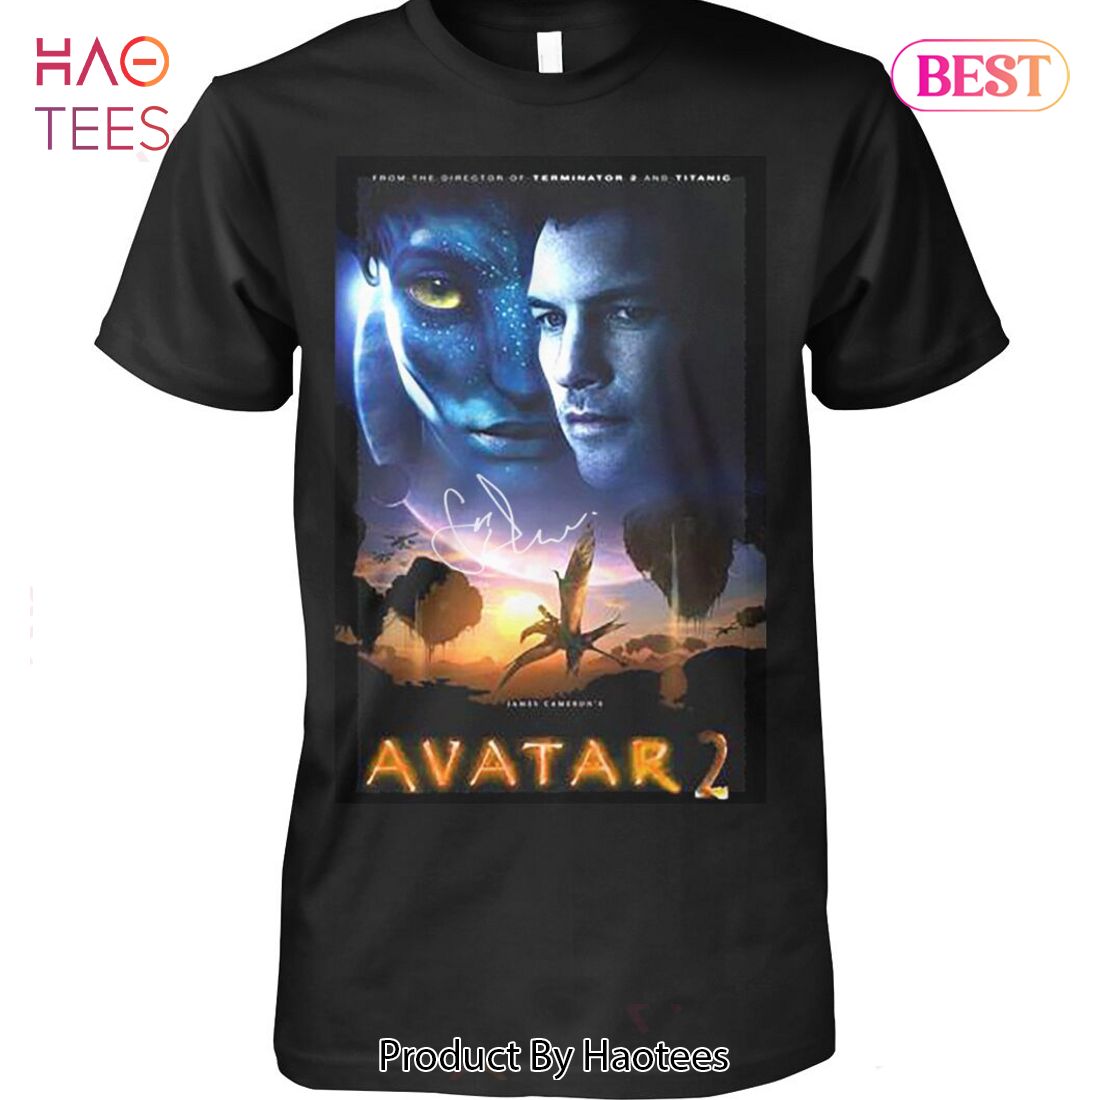 HOT TRENDING Avatar 2 Unisex T-Shirt